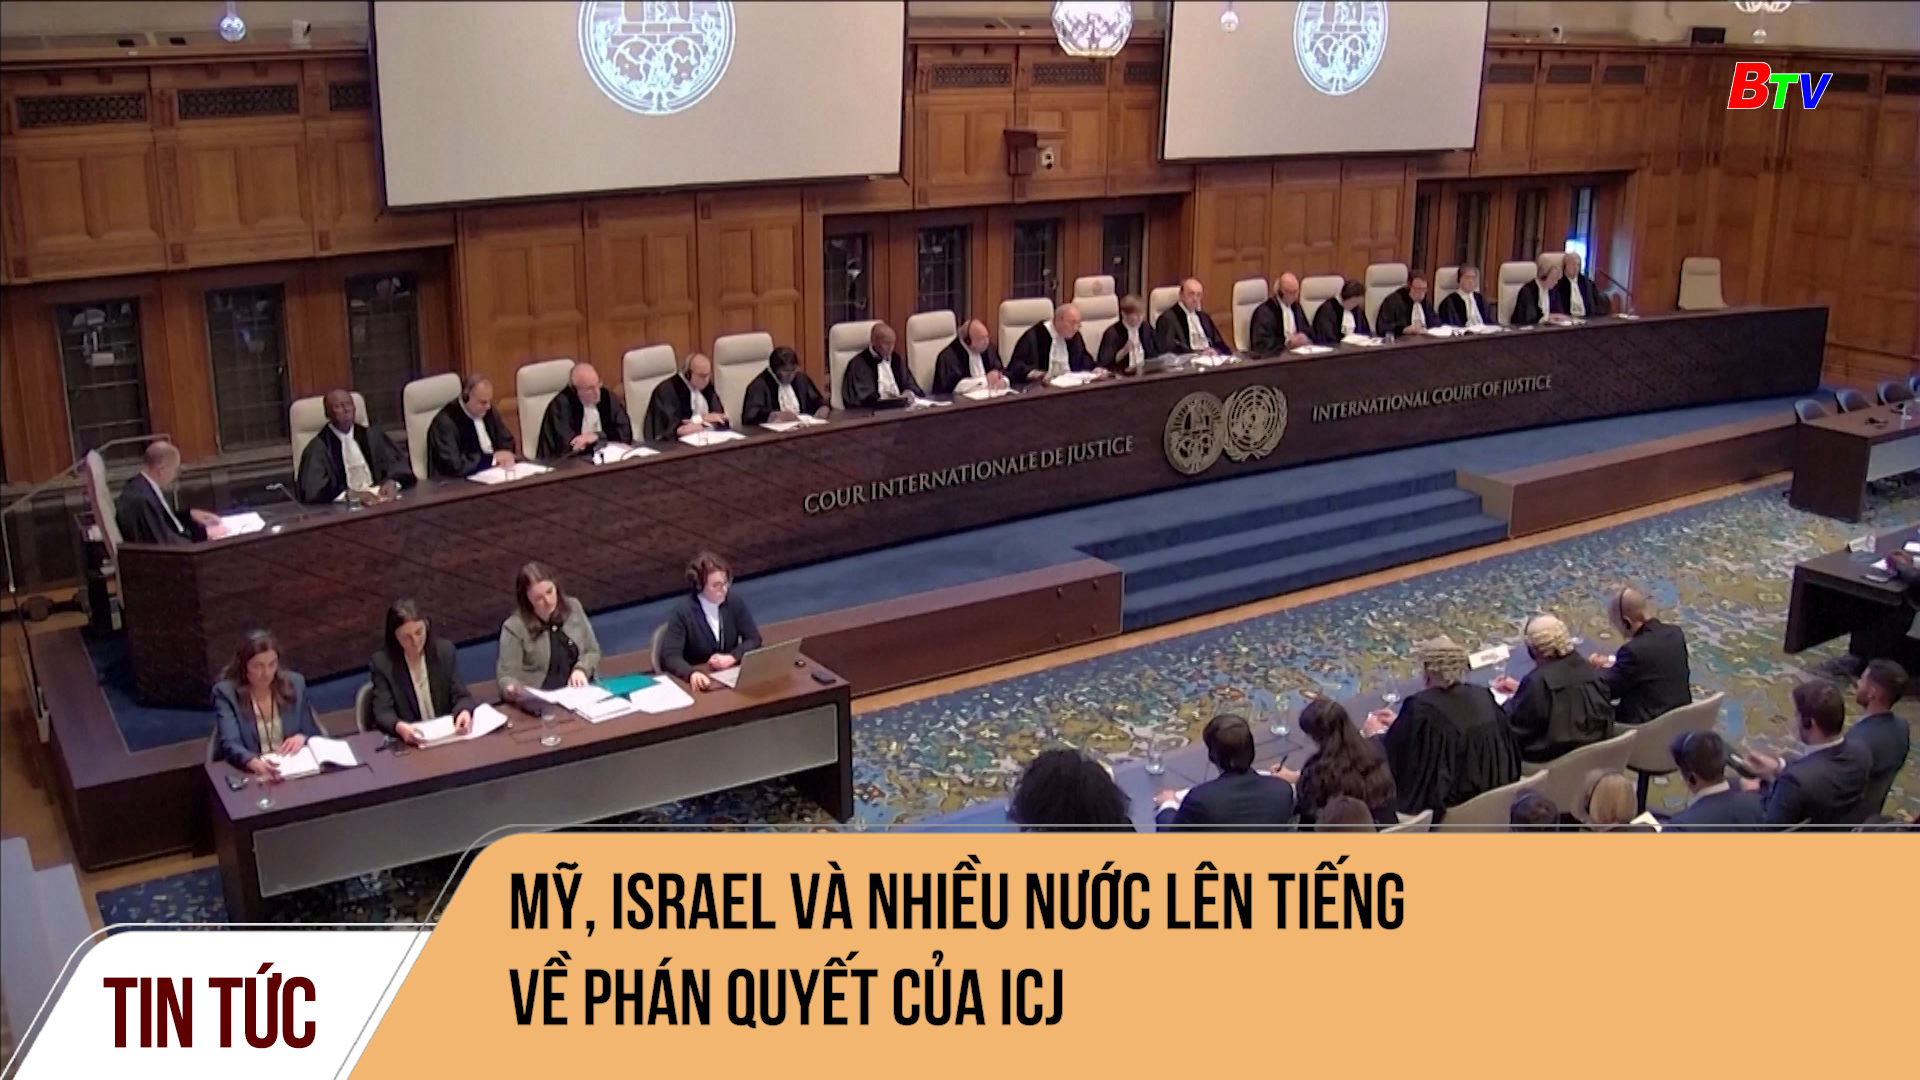 Mỹ, Israel và nhiều nước lên tiếng về phán quyết của ICJ